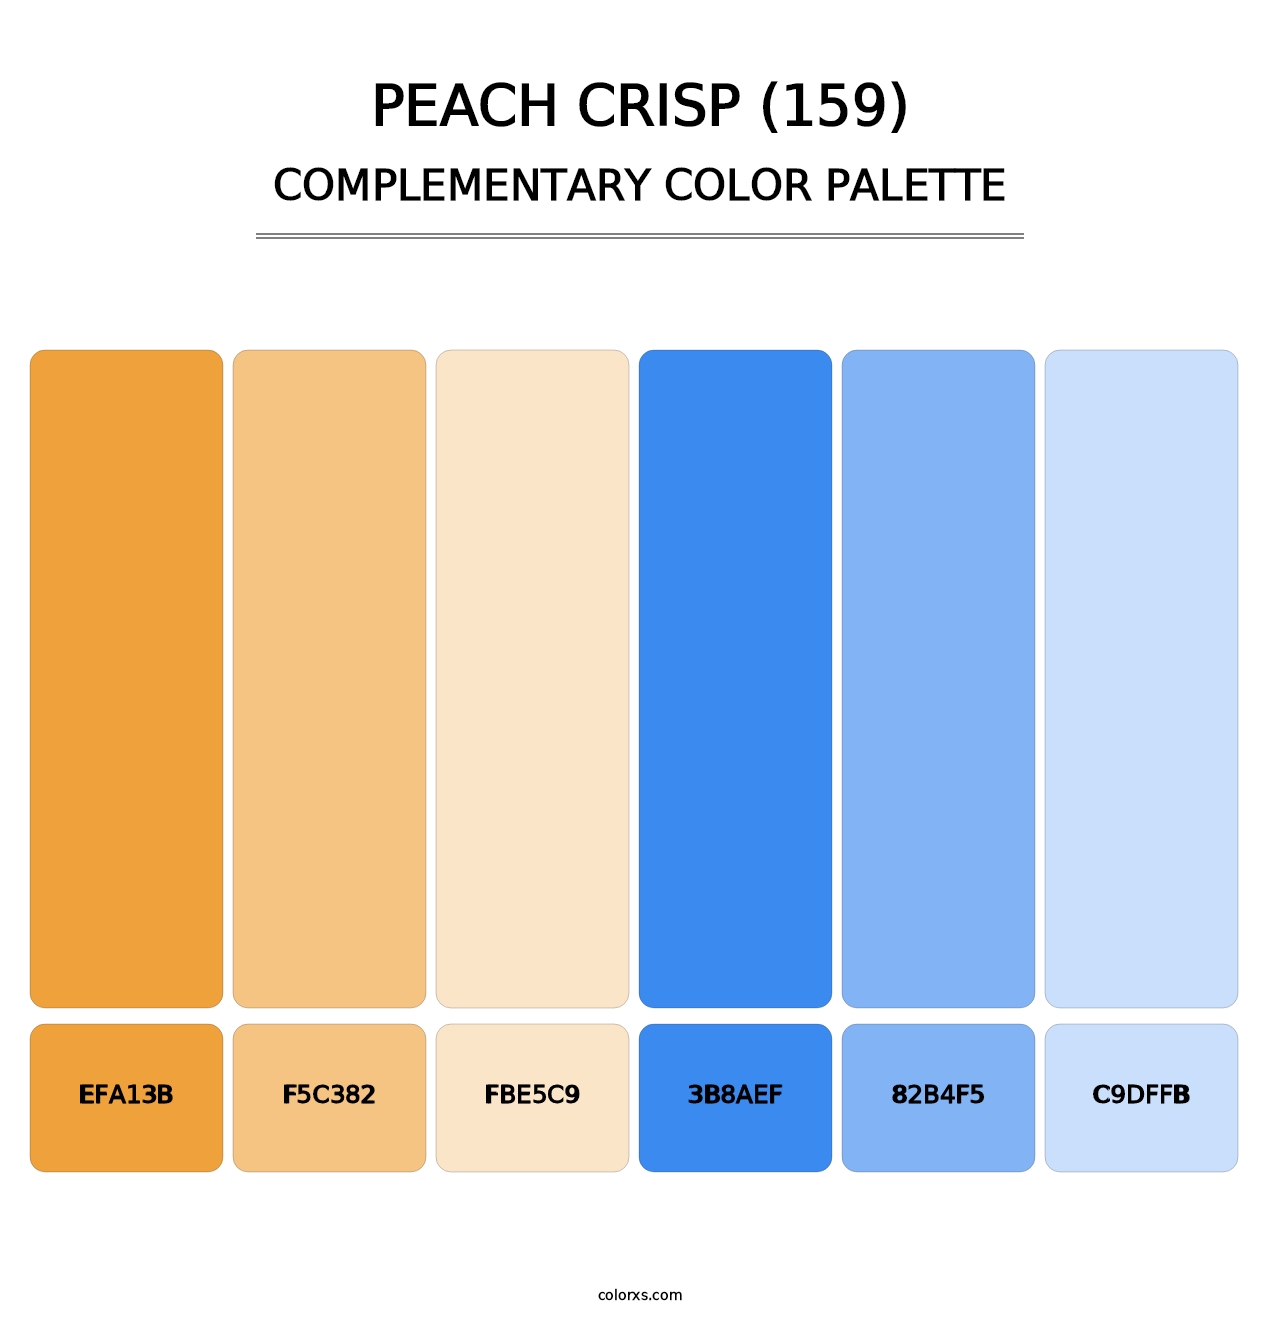 Peach Crisp (159) - Complementary Color Palette